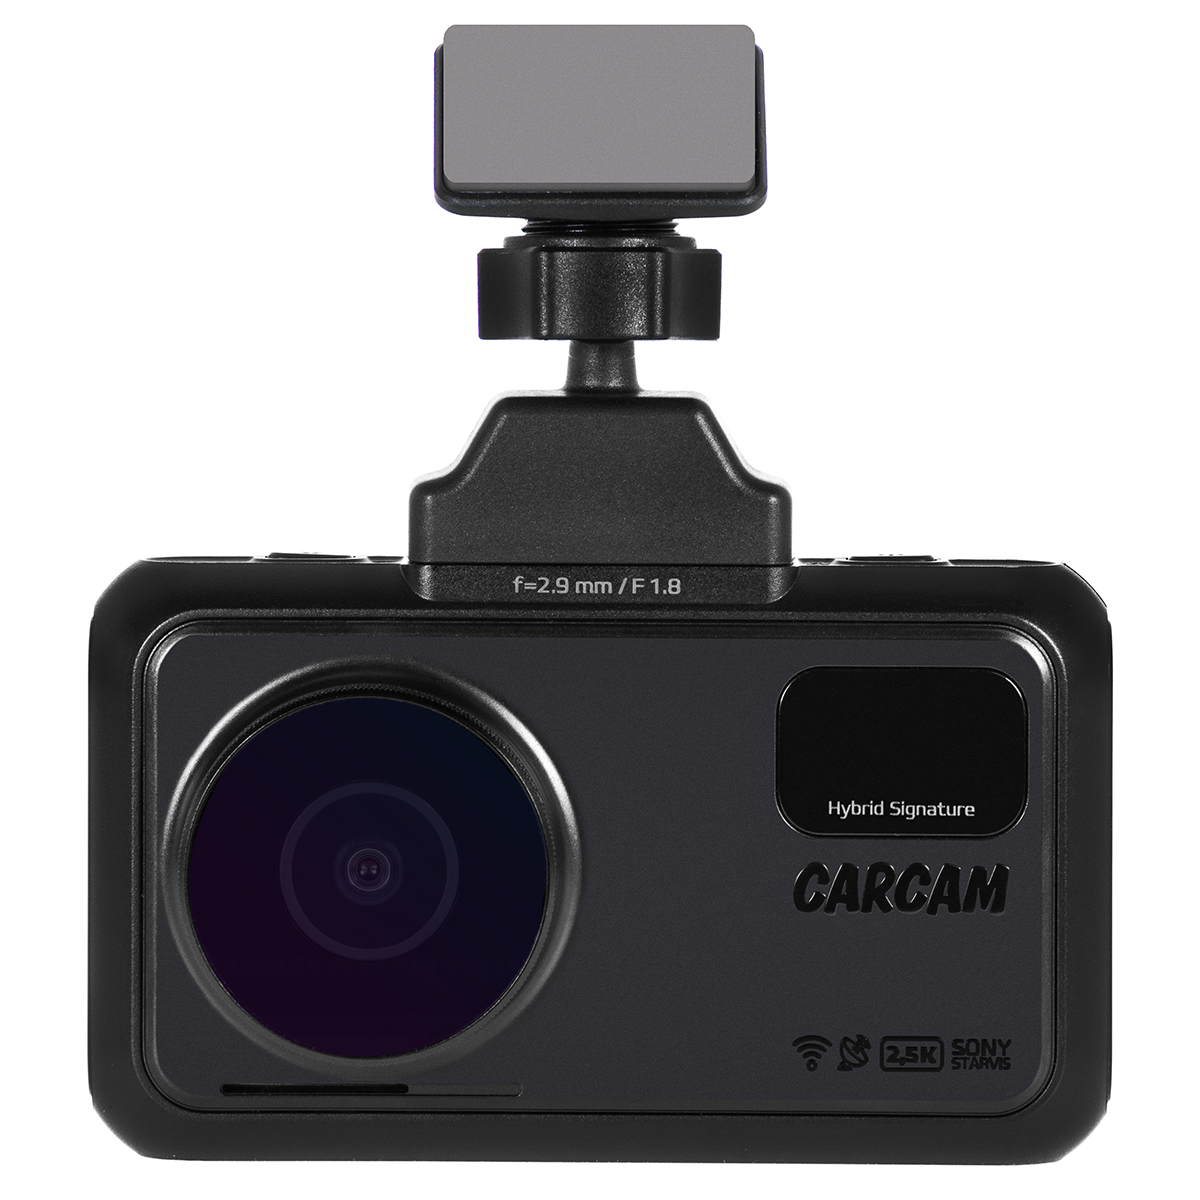 Видеорегистратор carcam hybrid 2. Carcam Hybrid 2 Signature. Carcam Hybrid 3s Signature. Видеорегистратор carcam Hybrid. Carcam Hybrid 2 Signature - видеорегистратор с радар-детектором.